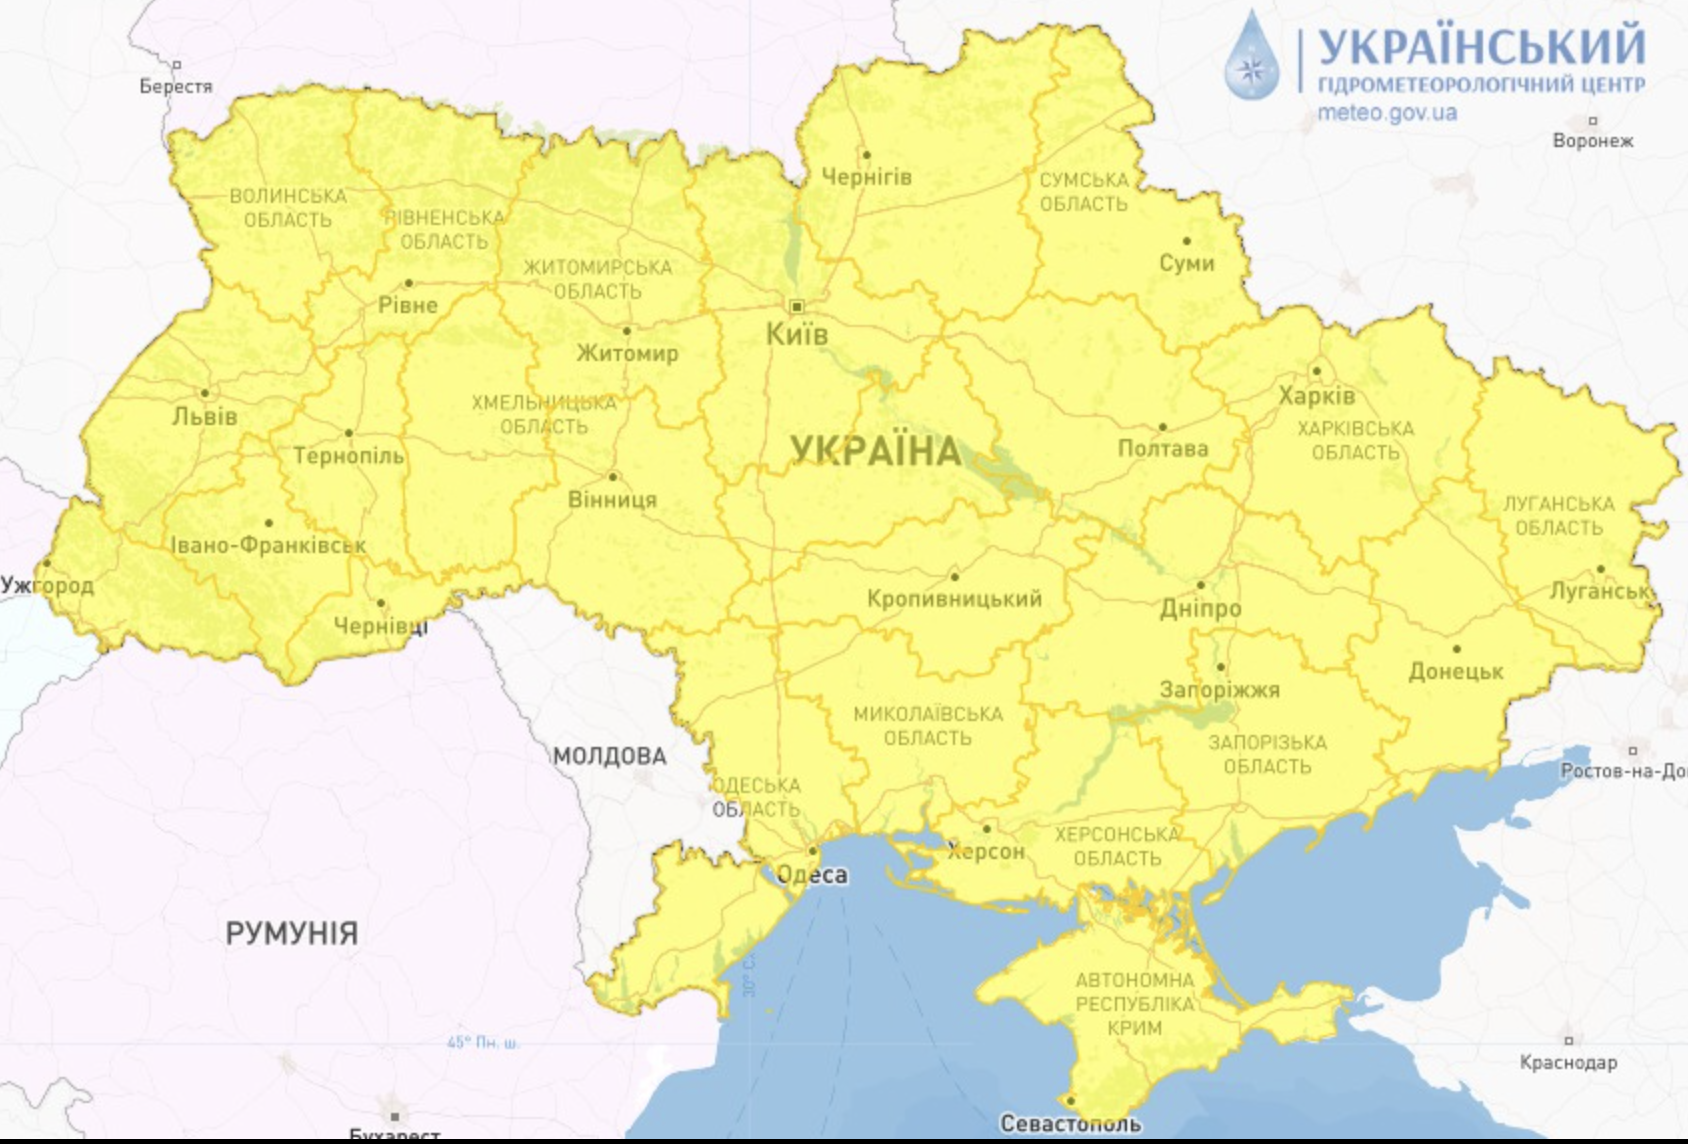 Синоптики объявили штормовое предупреждение в Украине